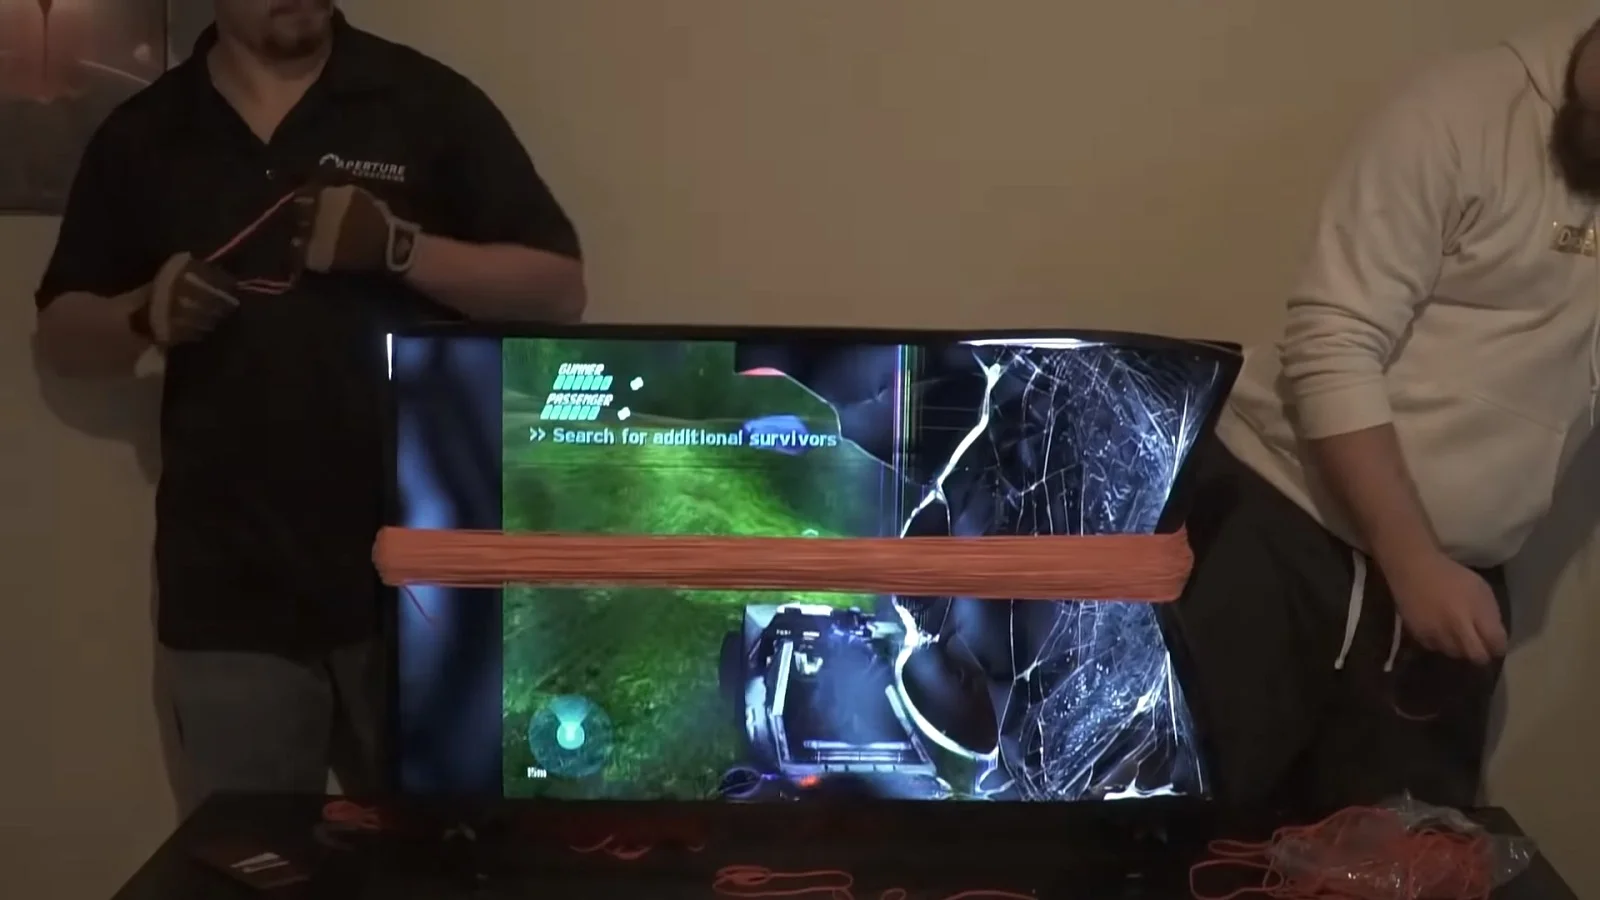 Ютуберы натягивают резинки на телевизор, пока их друг пытается пройти Halo. Жуткое зрелище! - фото 1